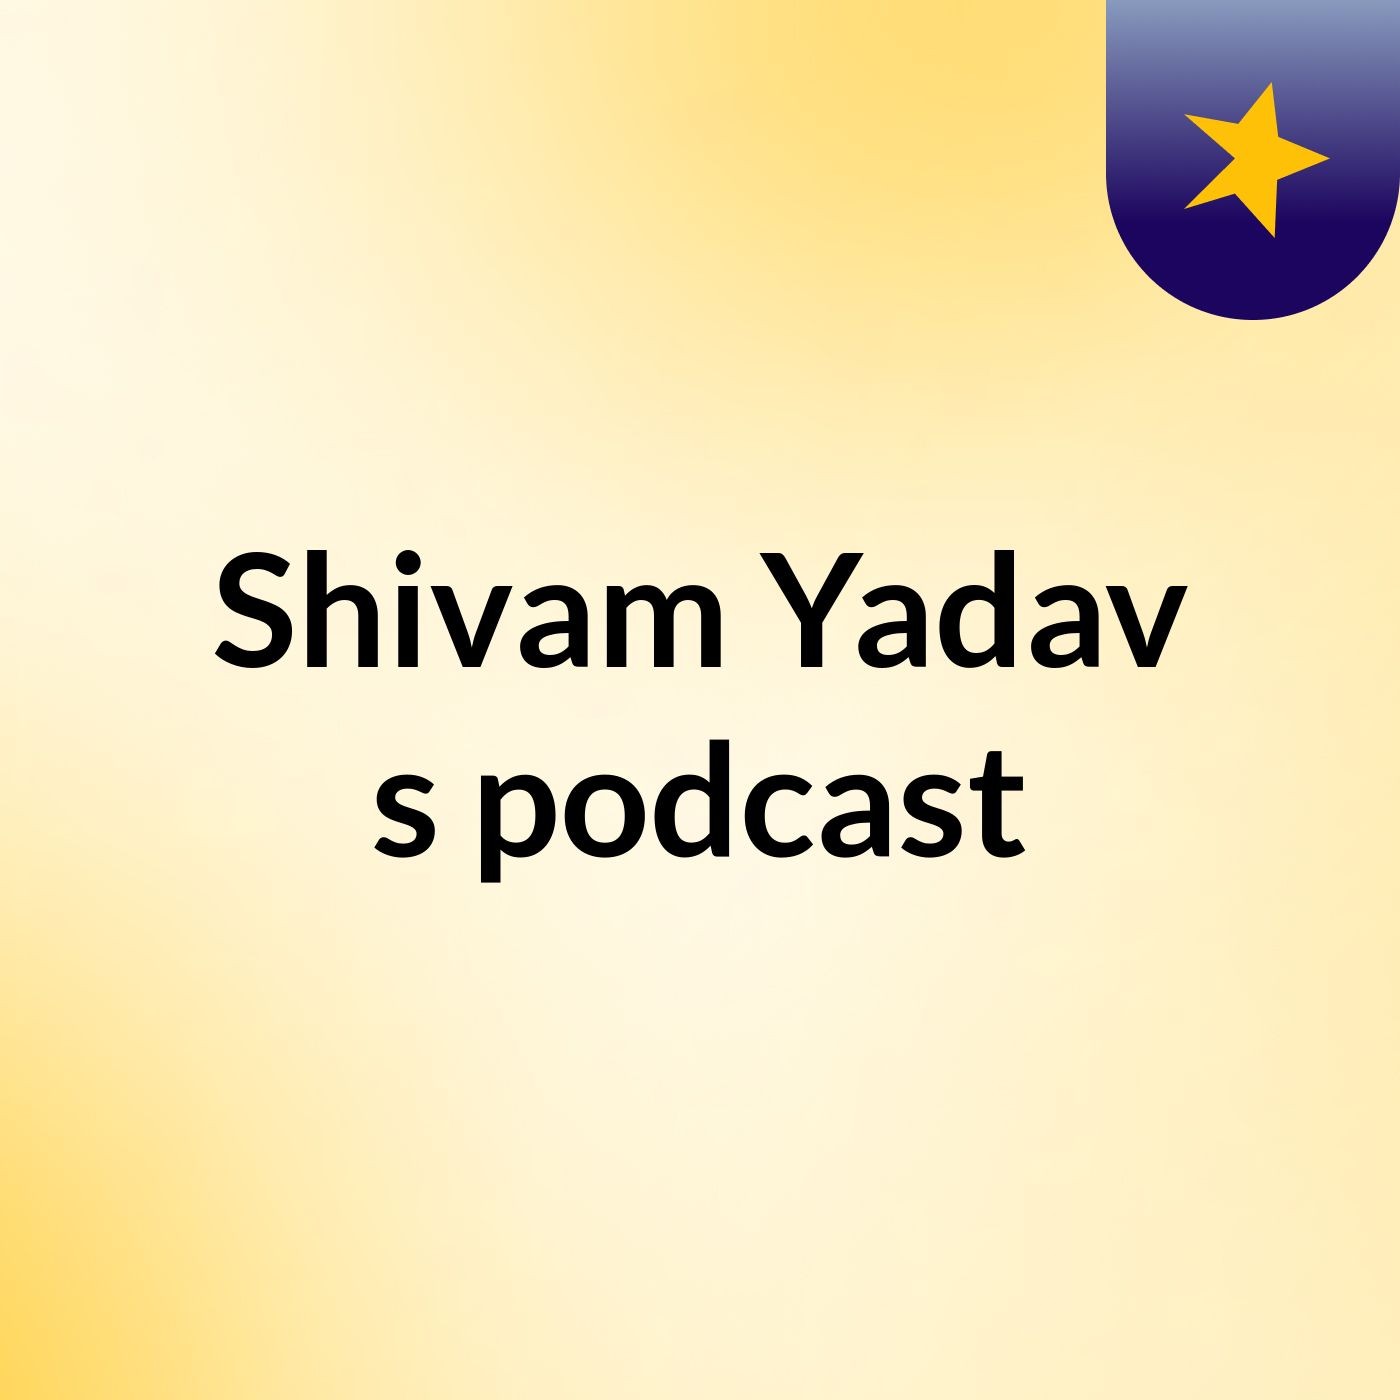 Shivam Yadav's podcast